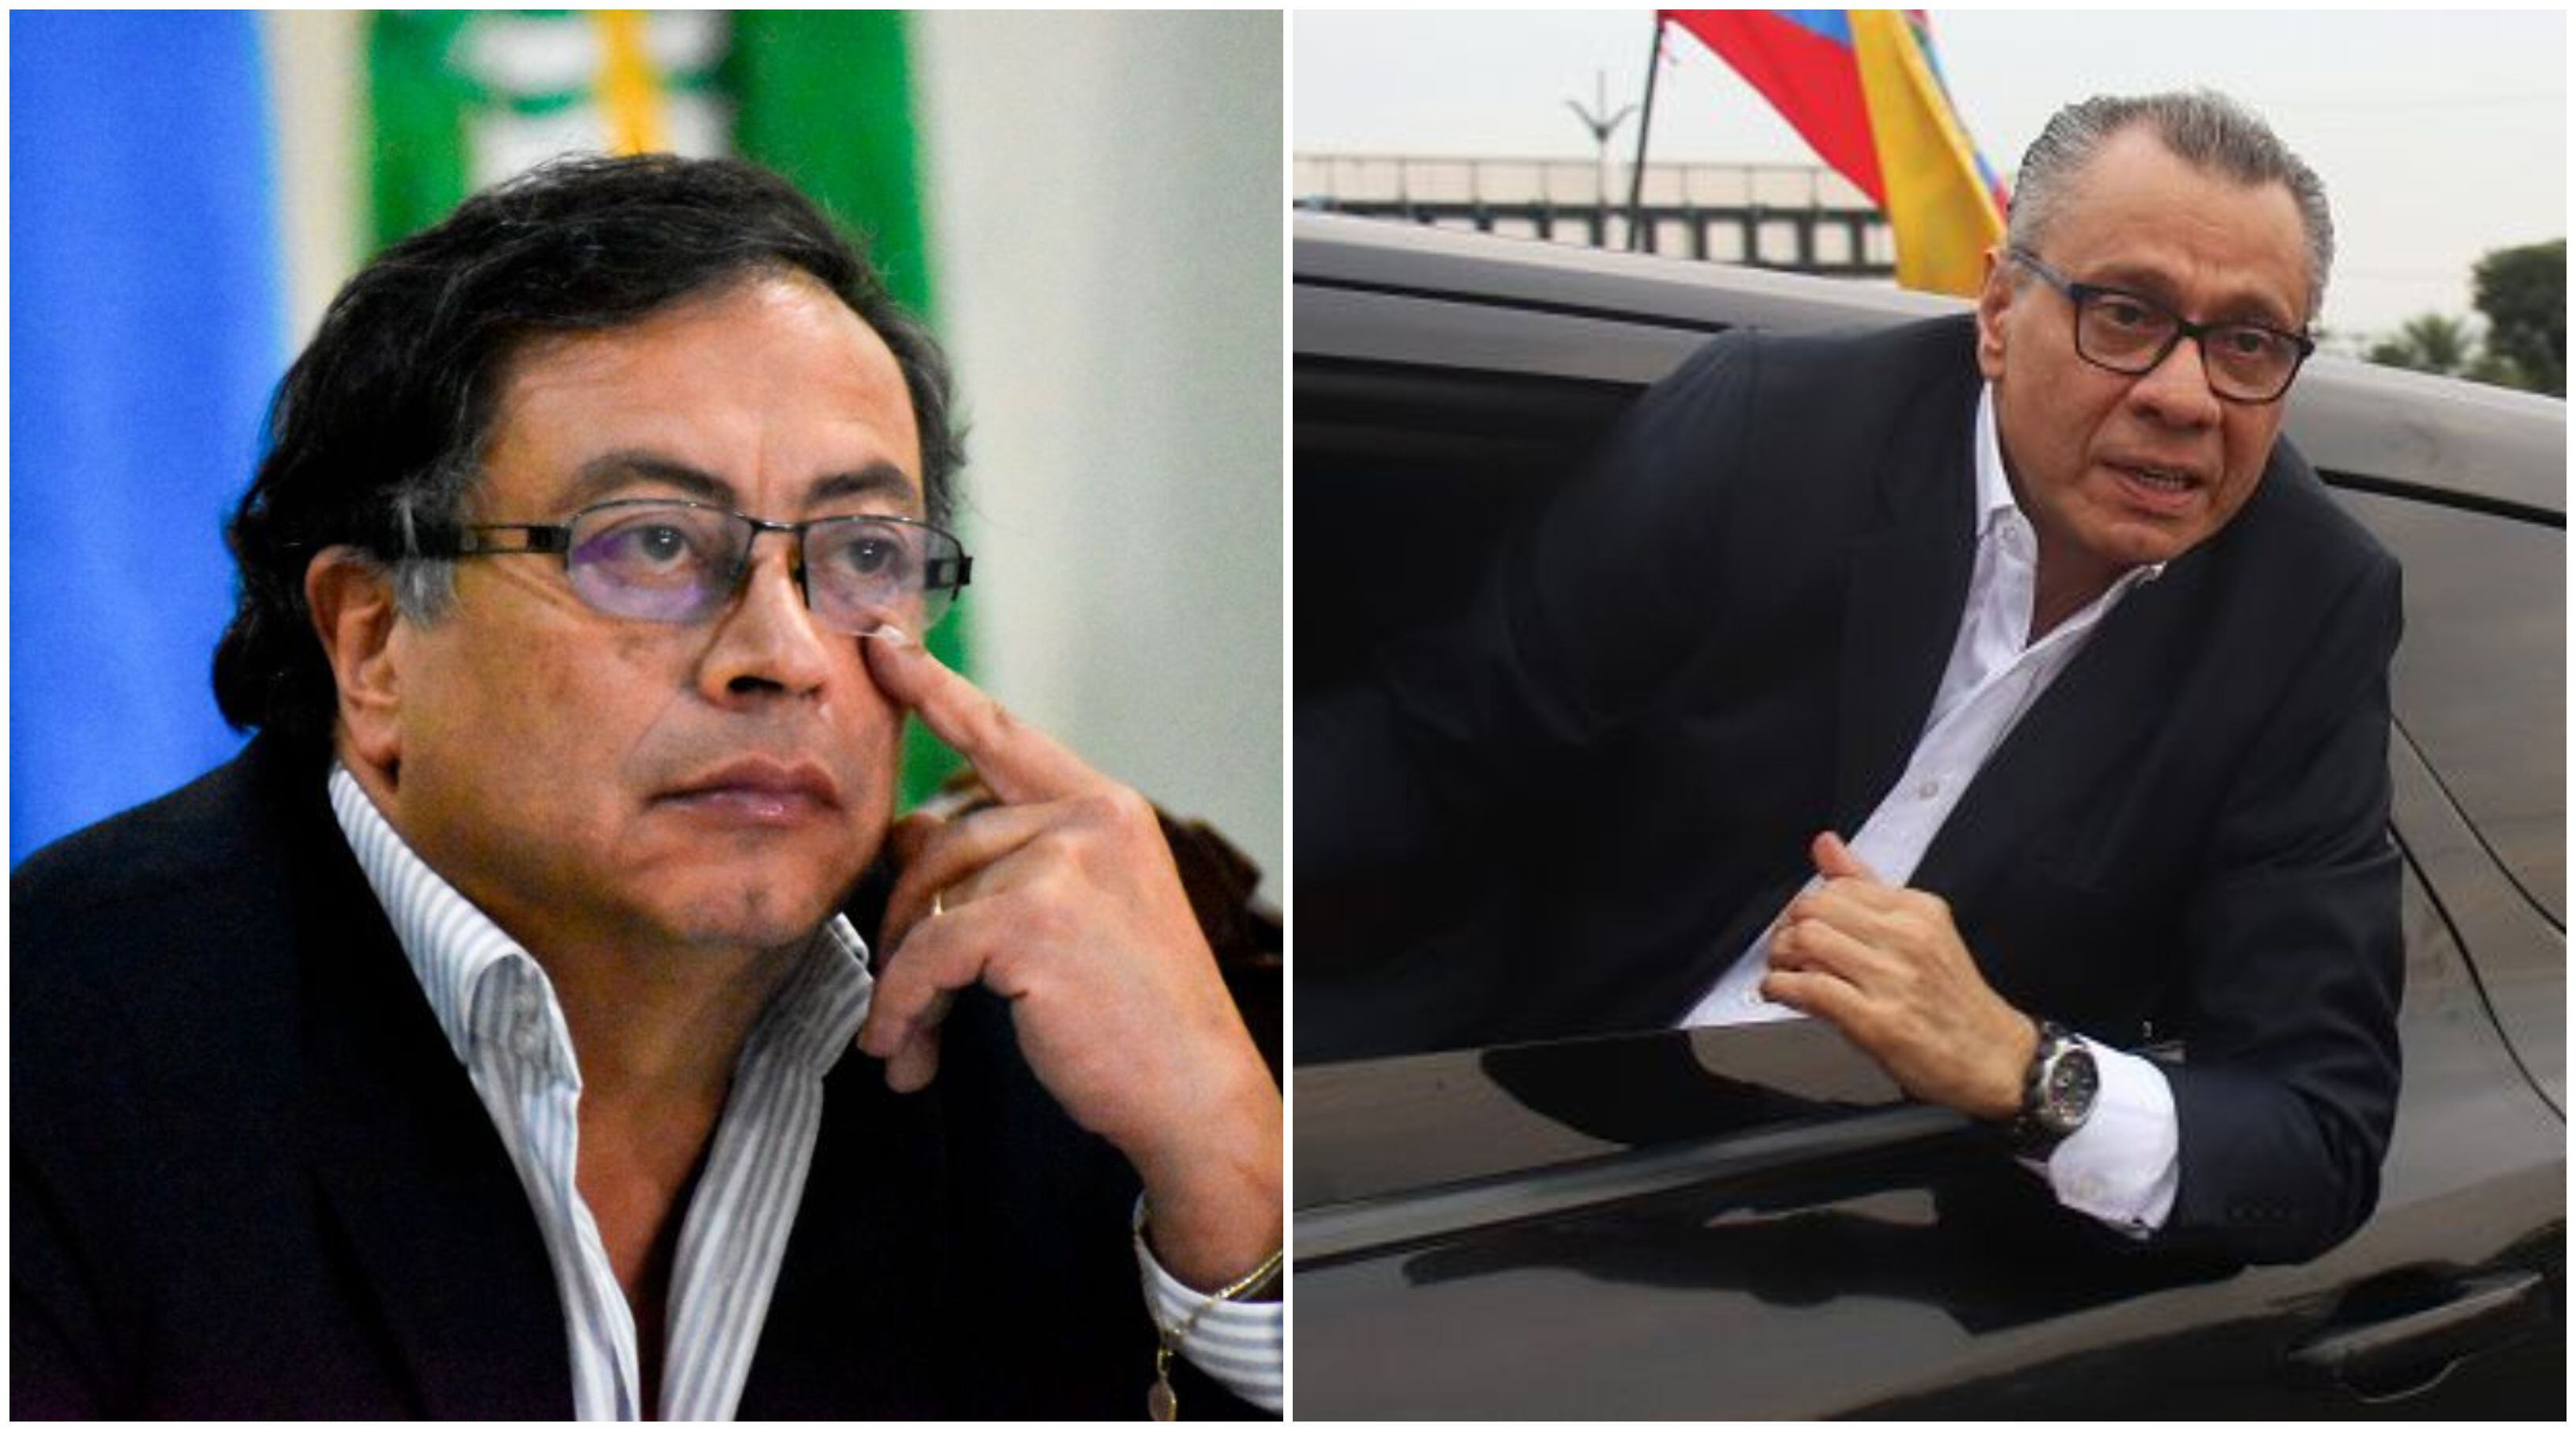 celac cierra filas contra ecuador por asalto a embajada mexicana y venezuela toma contundente decisión al retirar sus diplomáticos